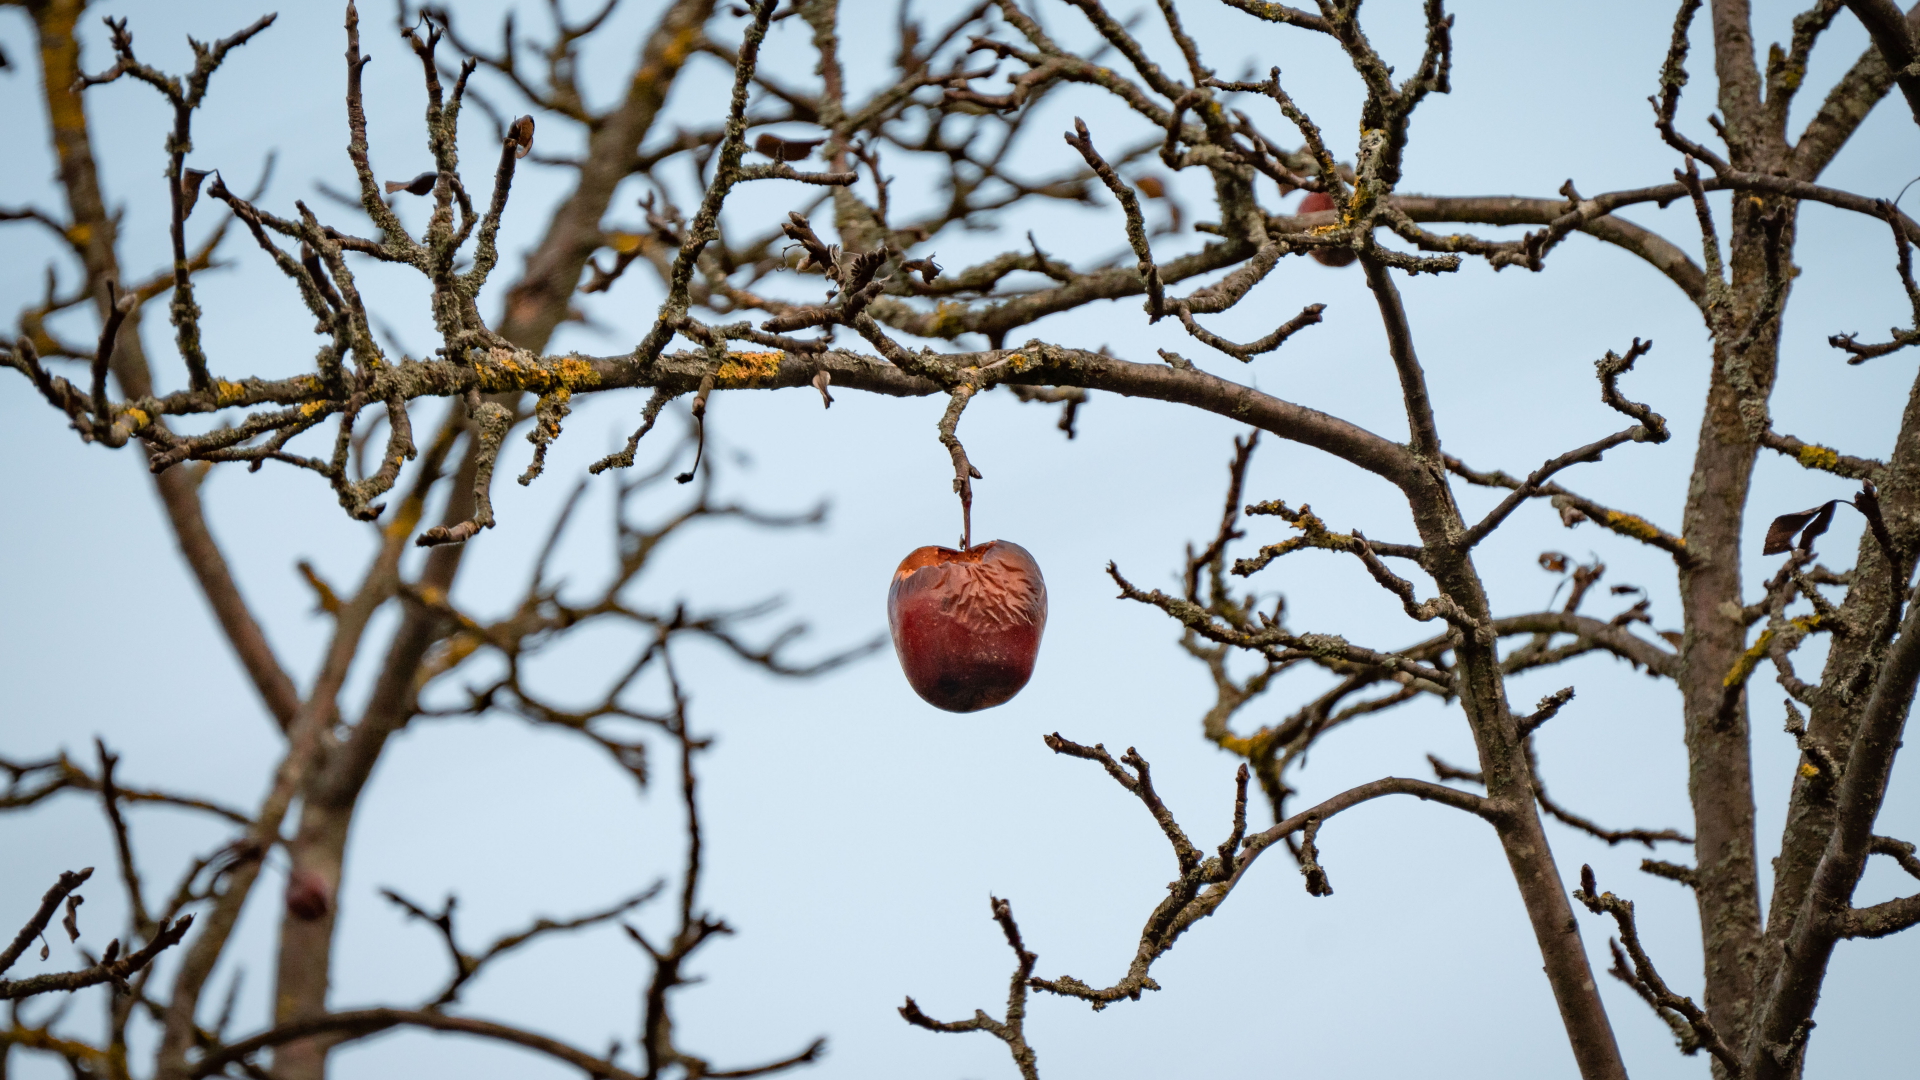 Forniture in Gran Bretagna: ora molto probabilmente non ci saranno più mele a breve